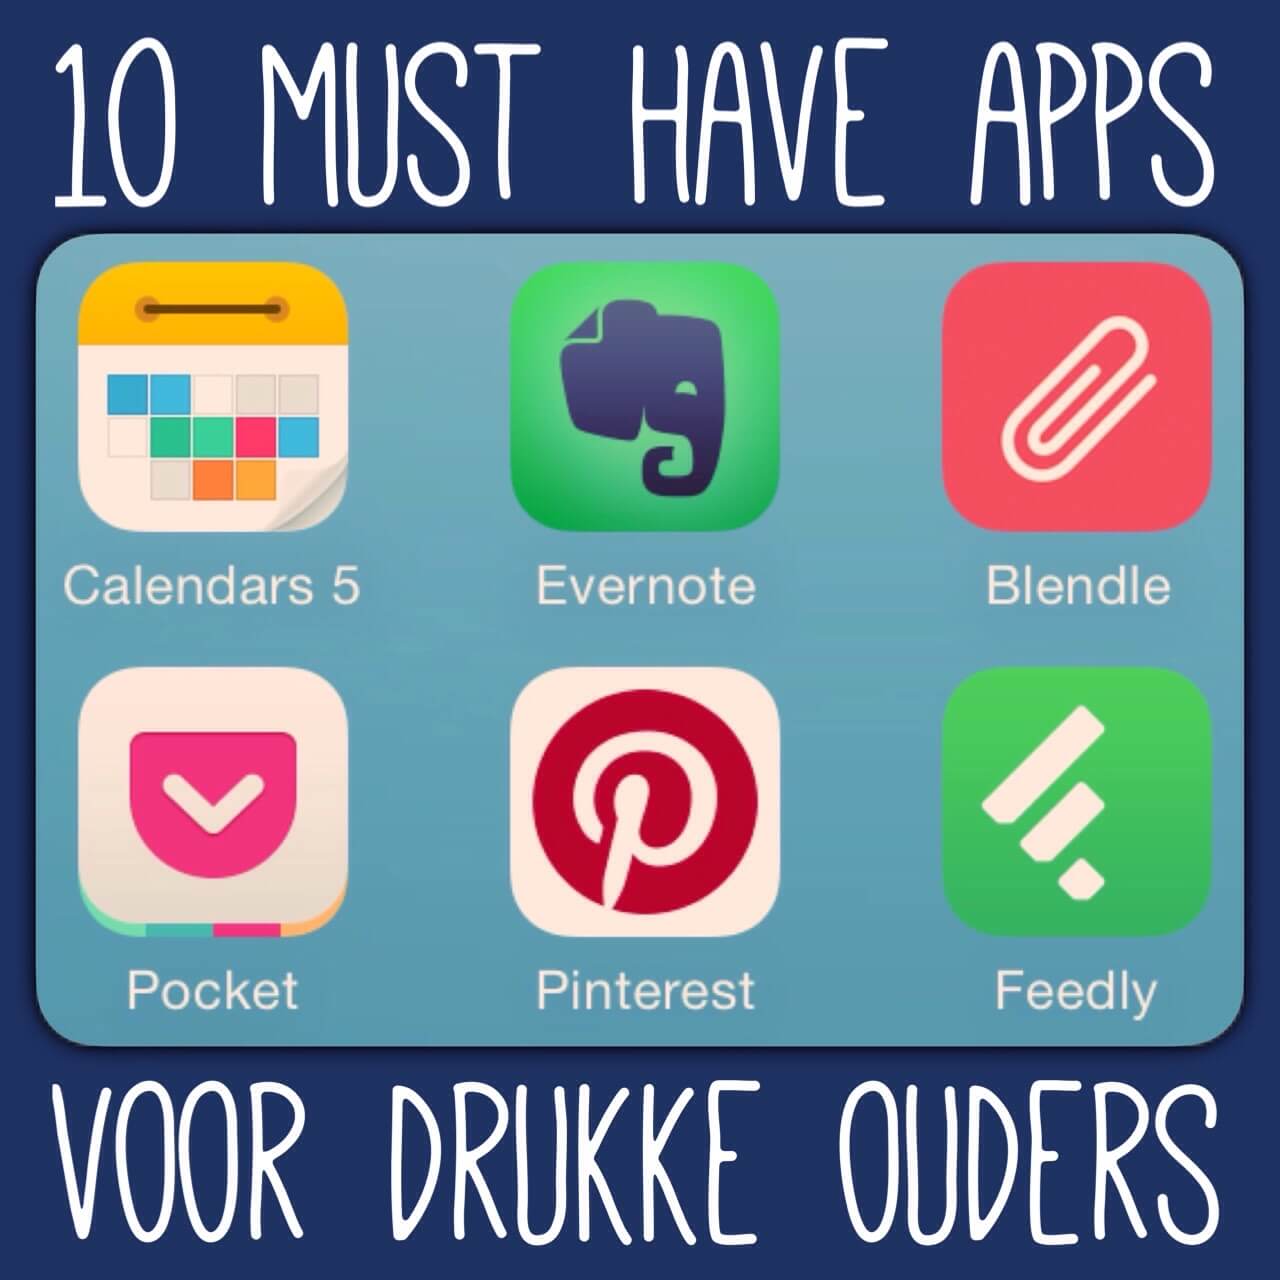 10 must have apps voor drukke ouders